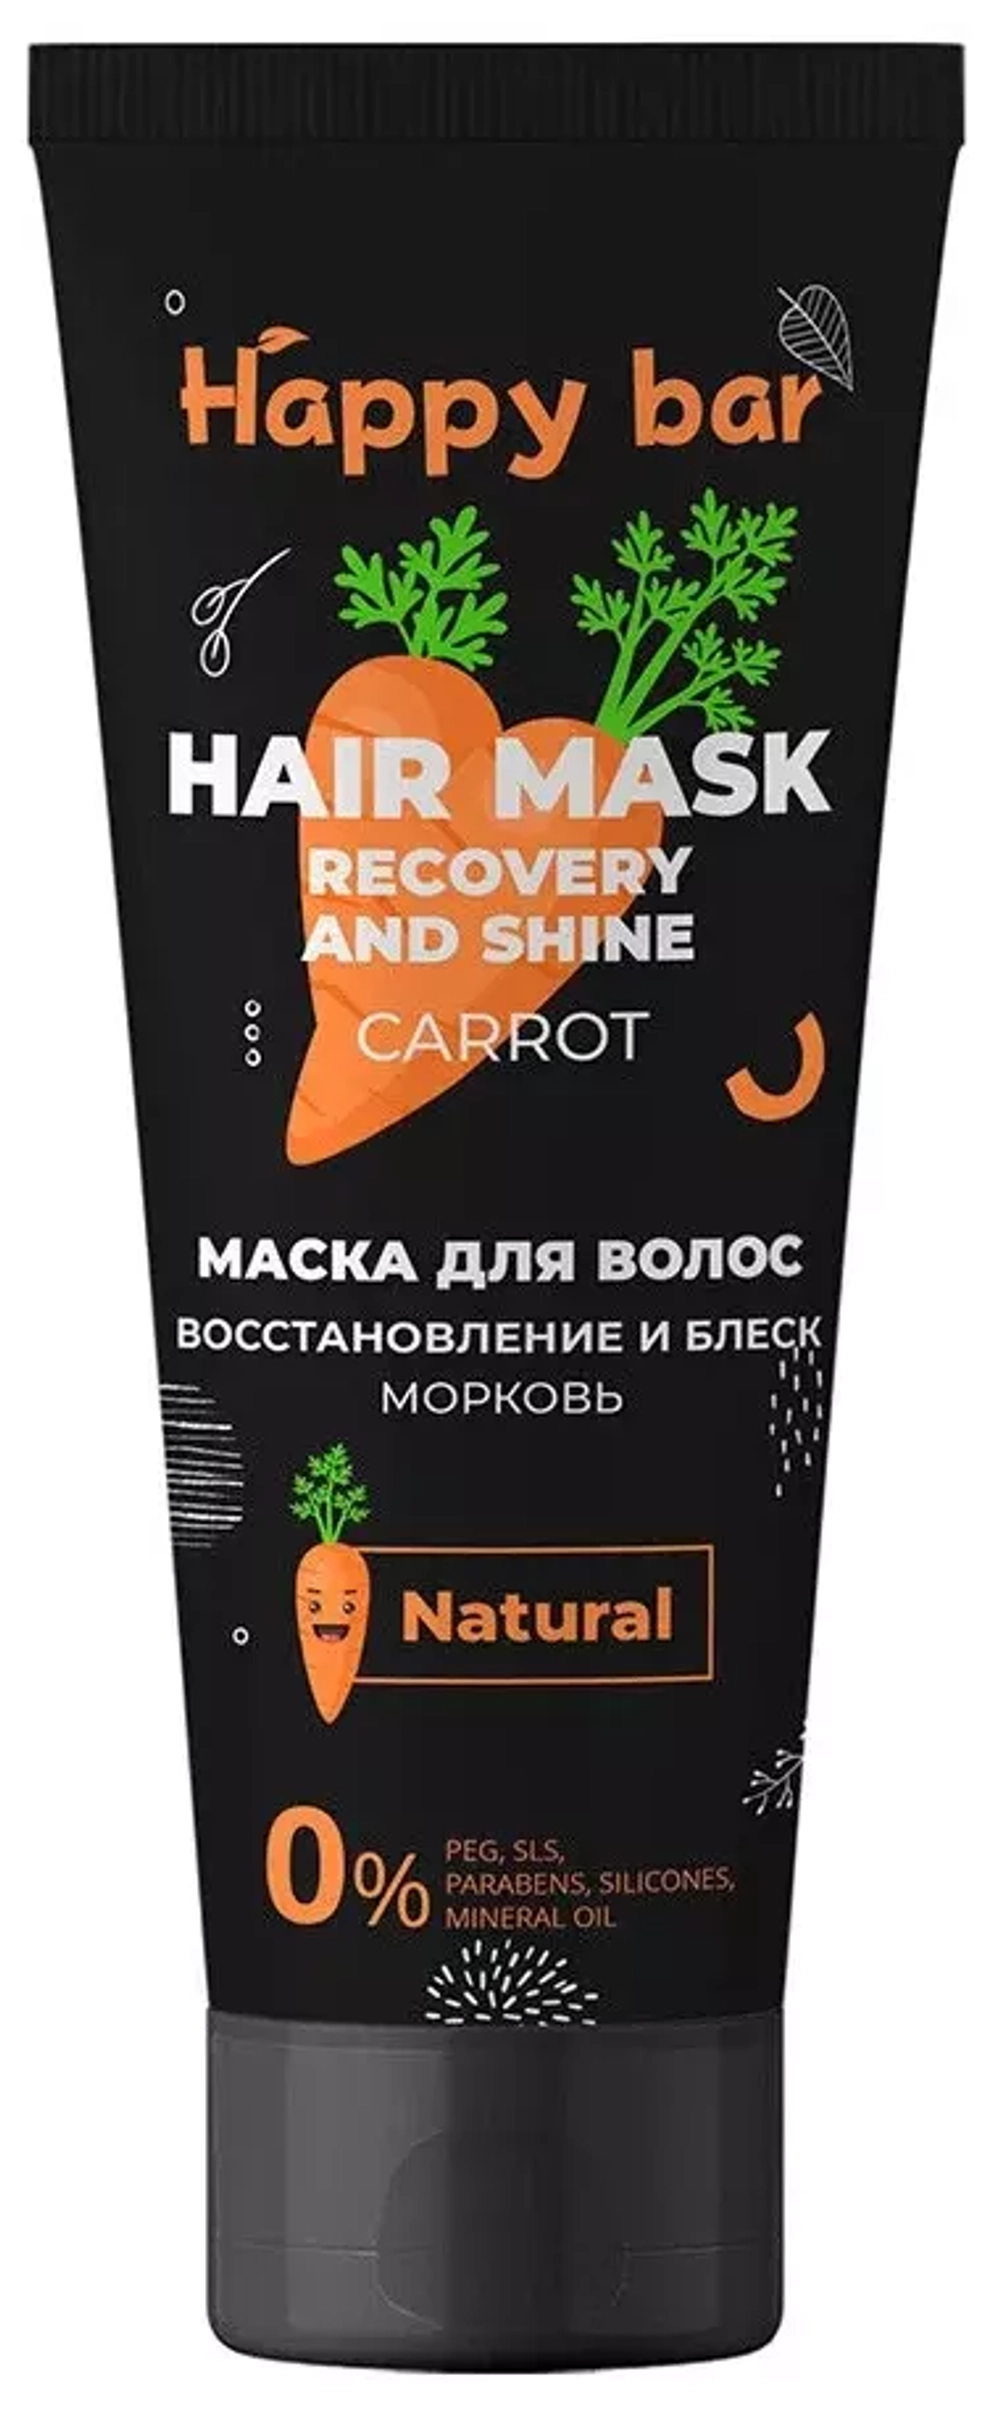 Маска для волос восстанавливающая, морковь, 250 мл.